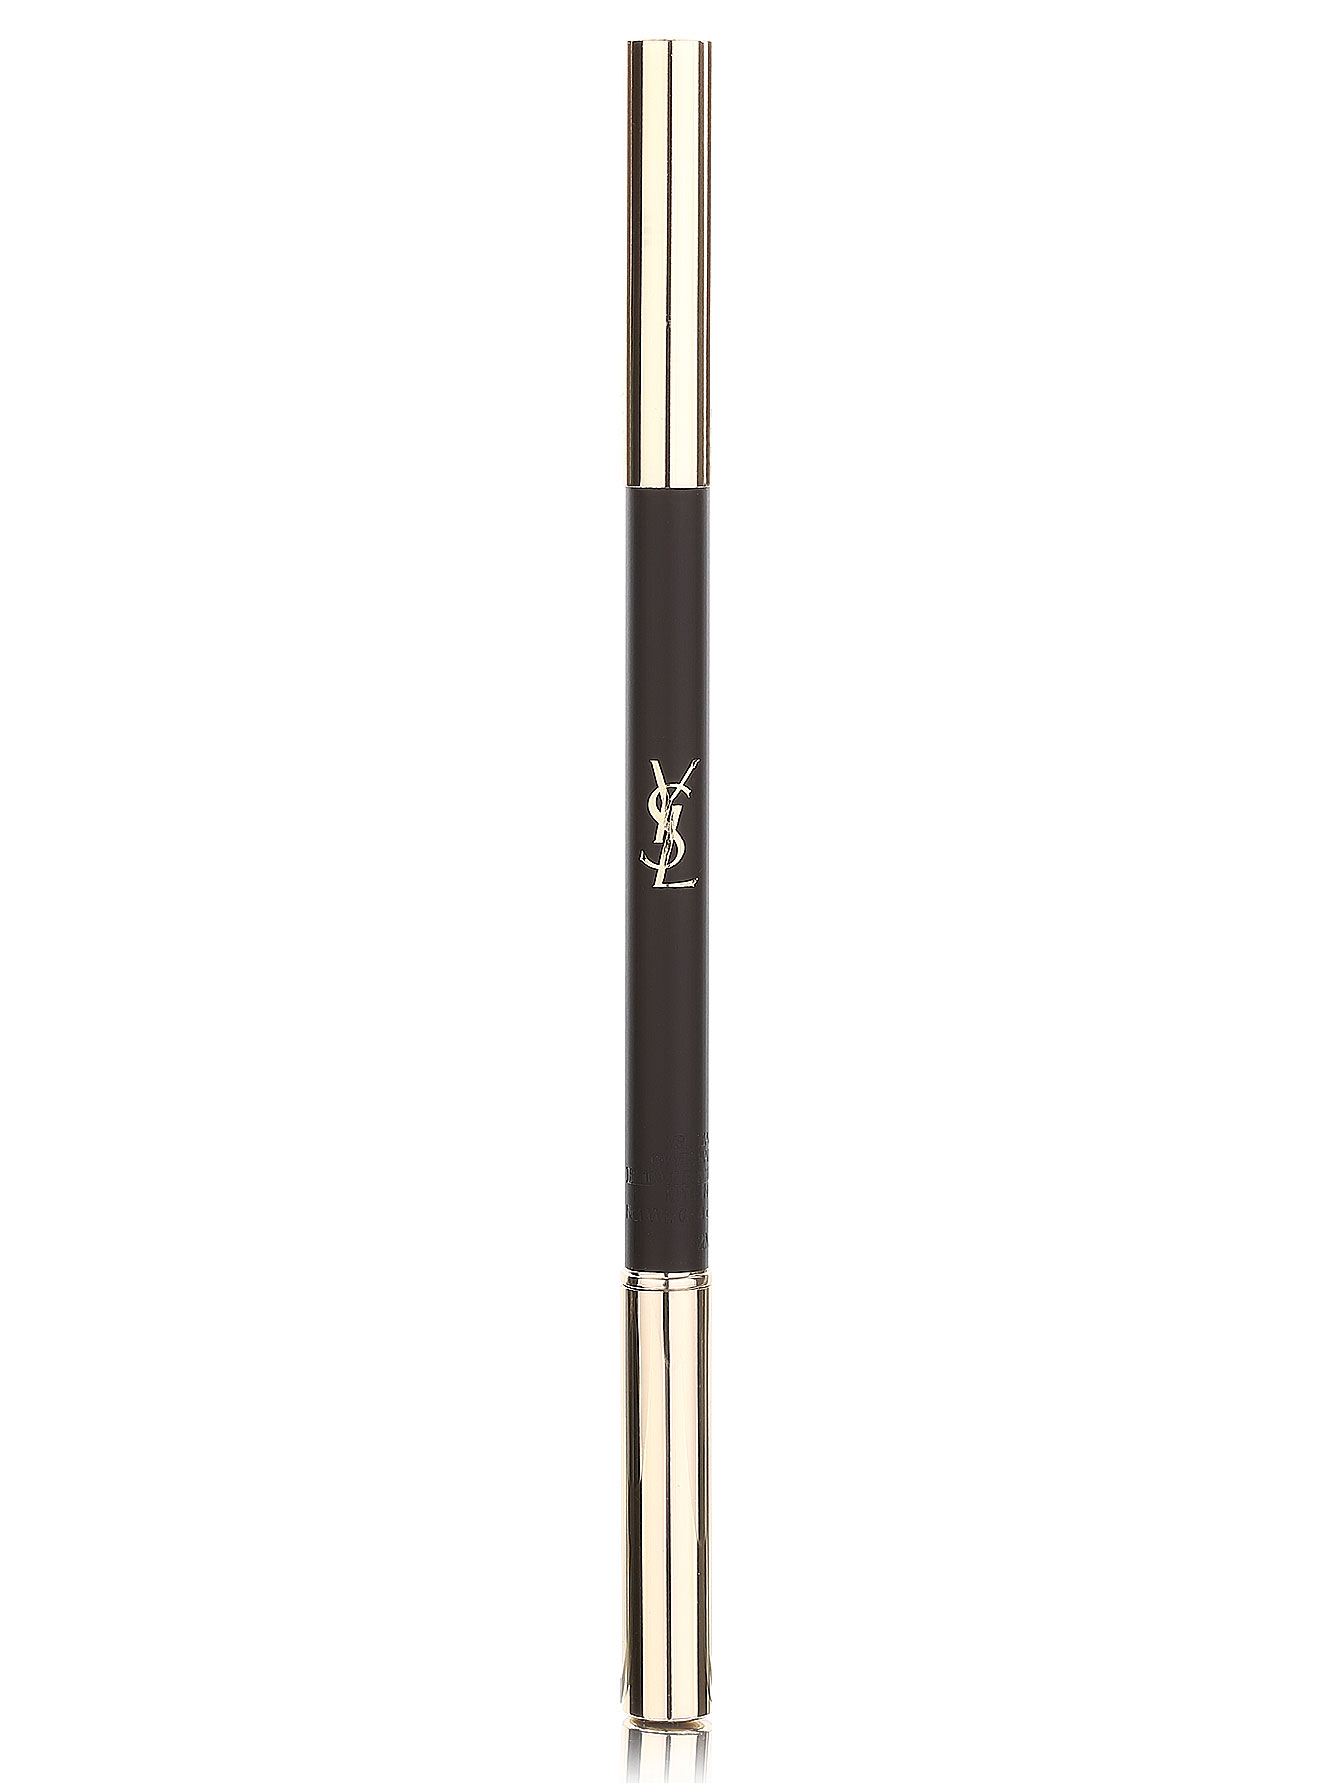 Карандаш для бровей - №5, Eyebrow Pencil - Общий вид